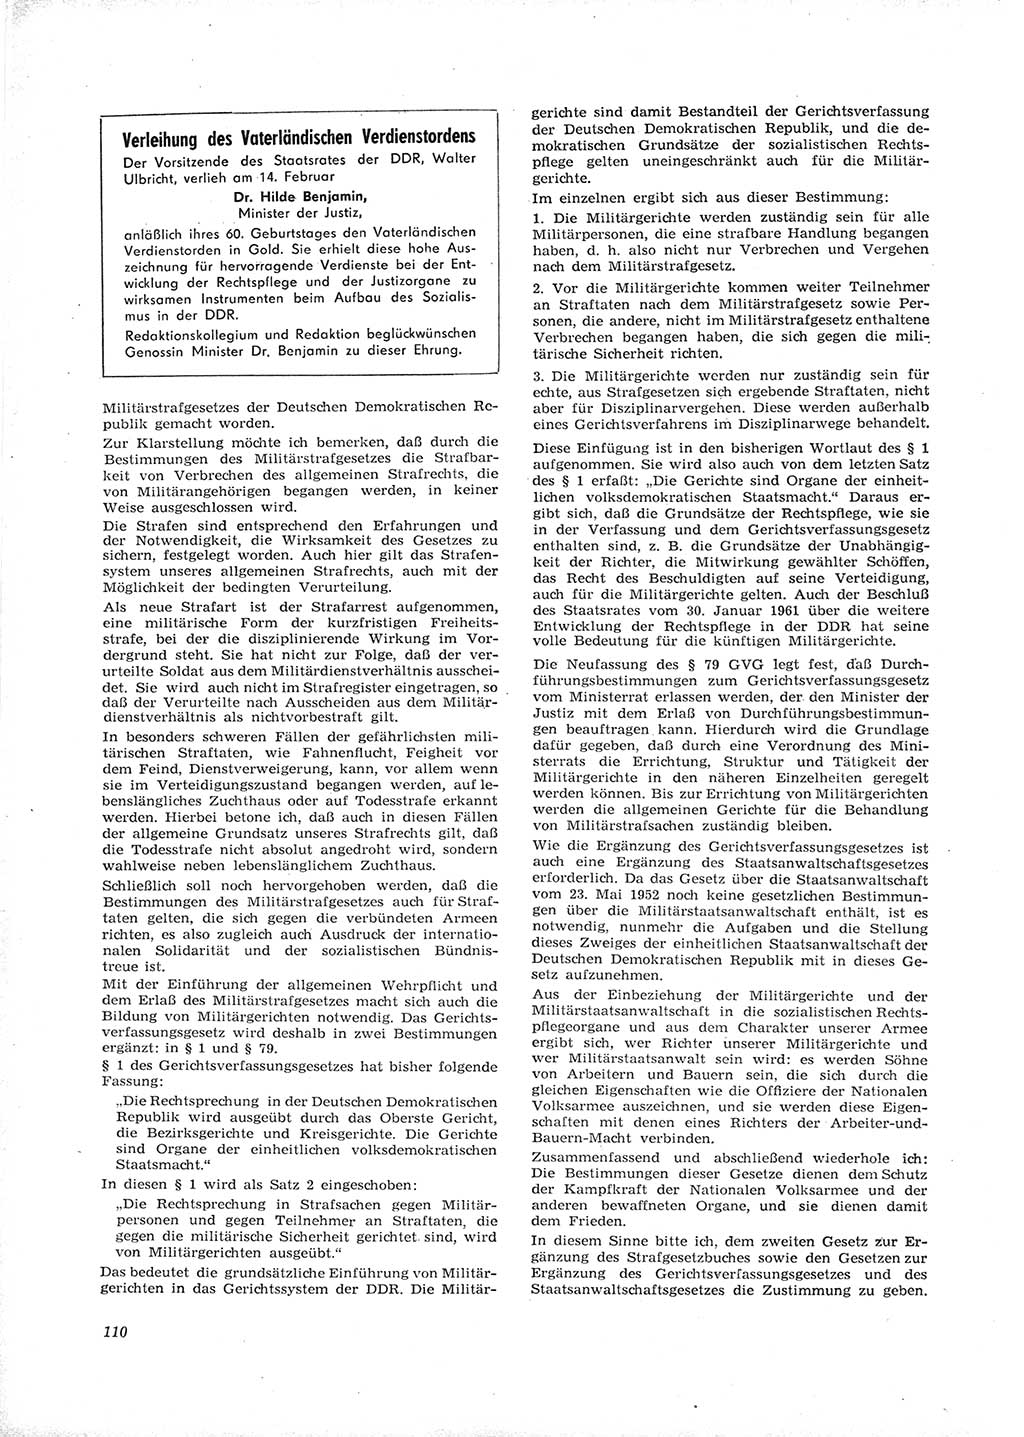 Neue Justiz (NJ), Zeitschrift für Recht und Rechtswissenschaft [Deutsche Demokratische Republik (DDR)], 16. Jahrgang 1962, Seite 110 (NJ DDR 1962, S. 110)